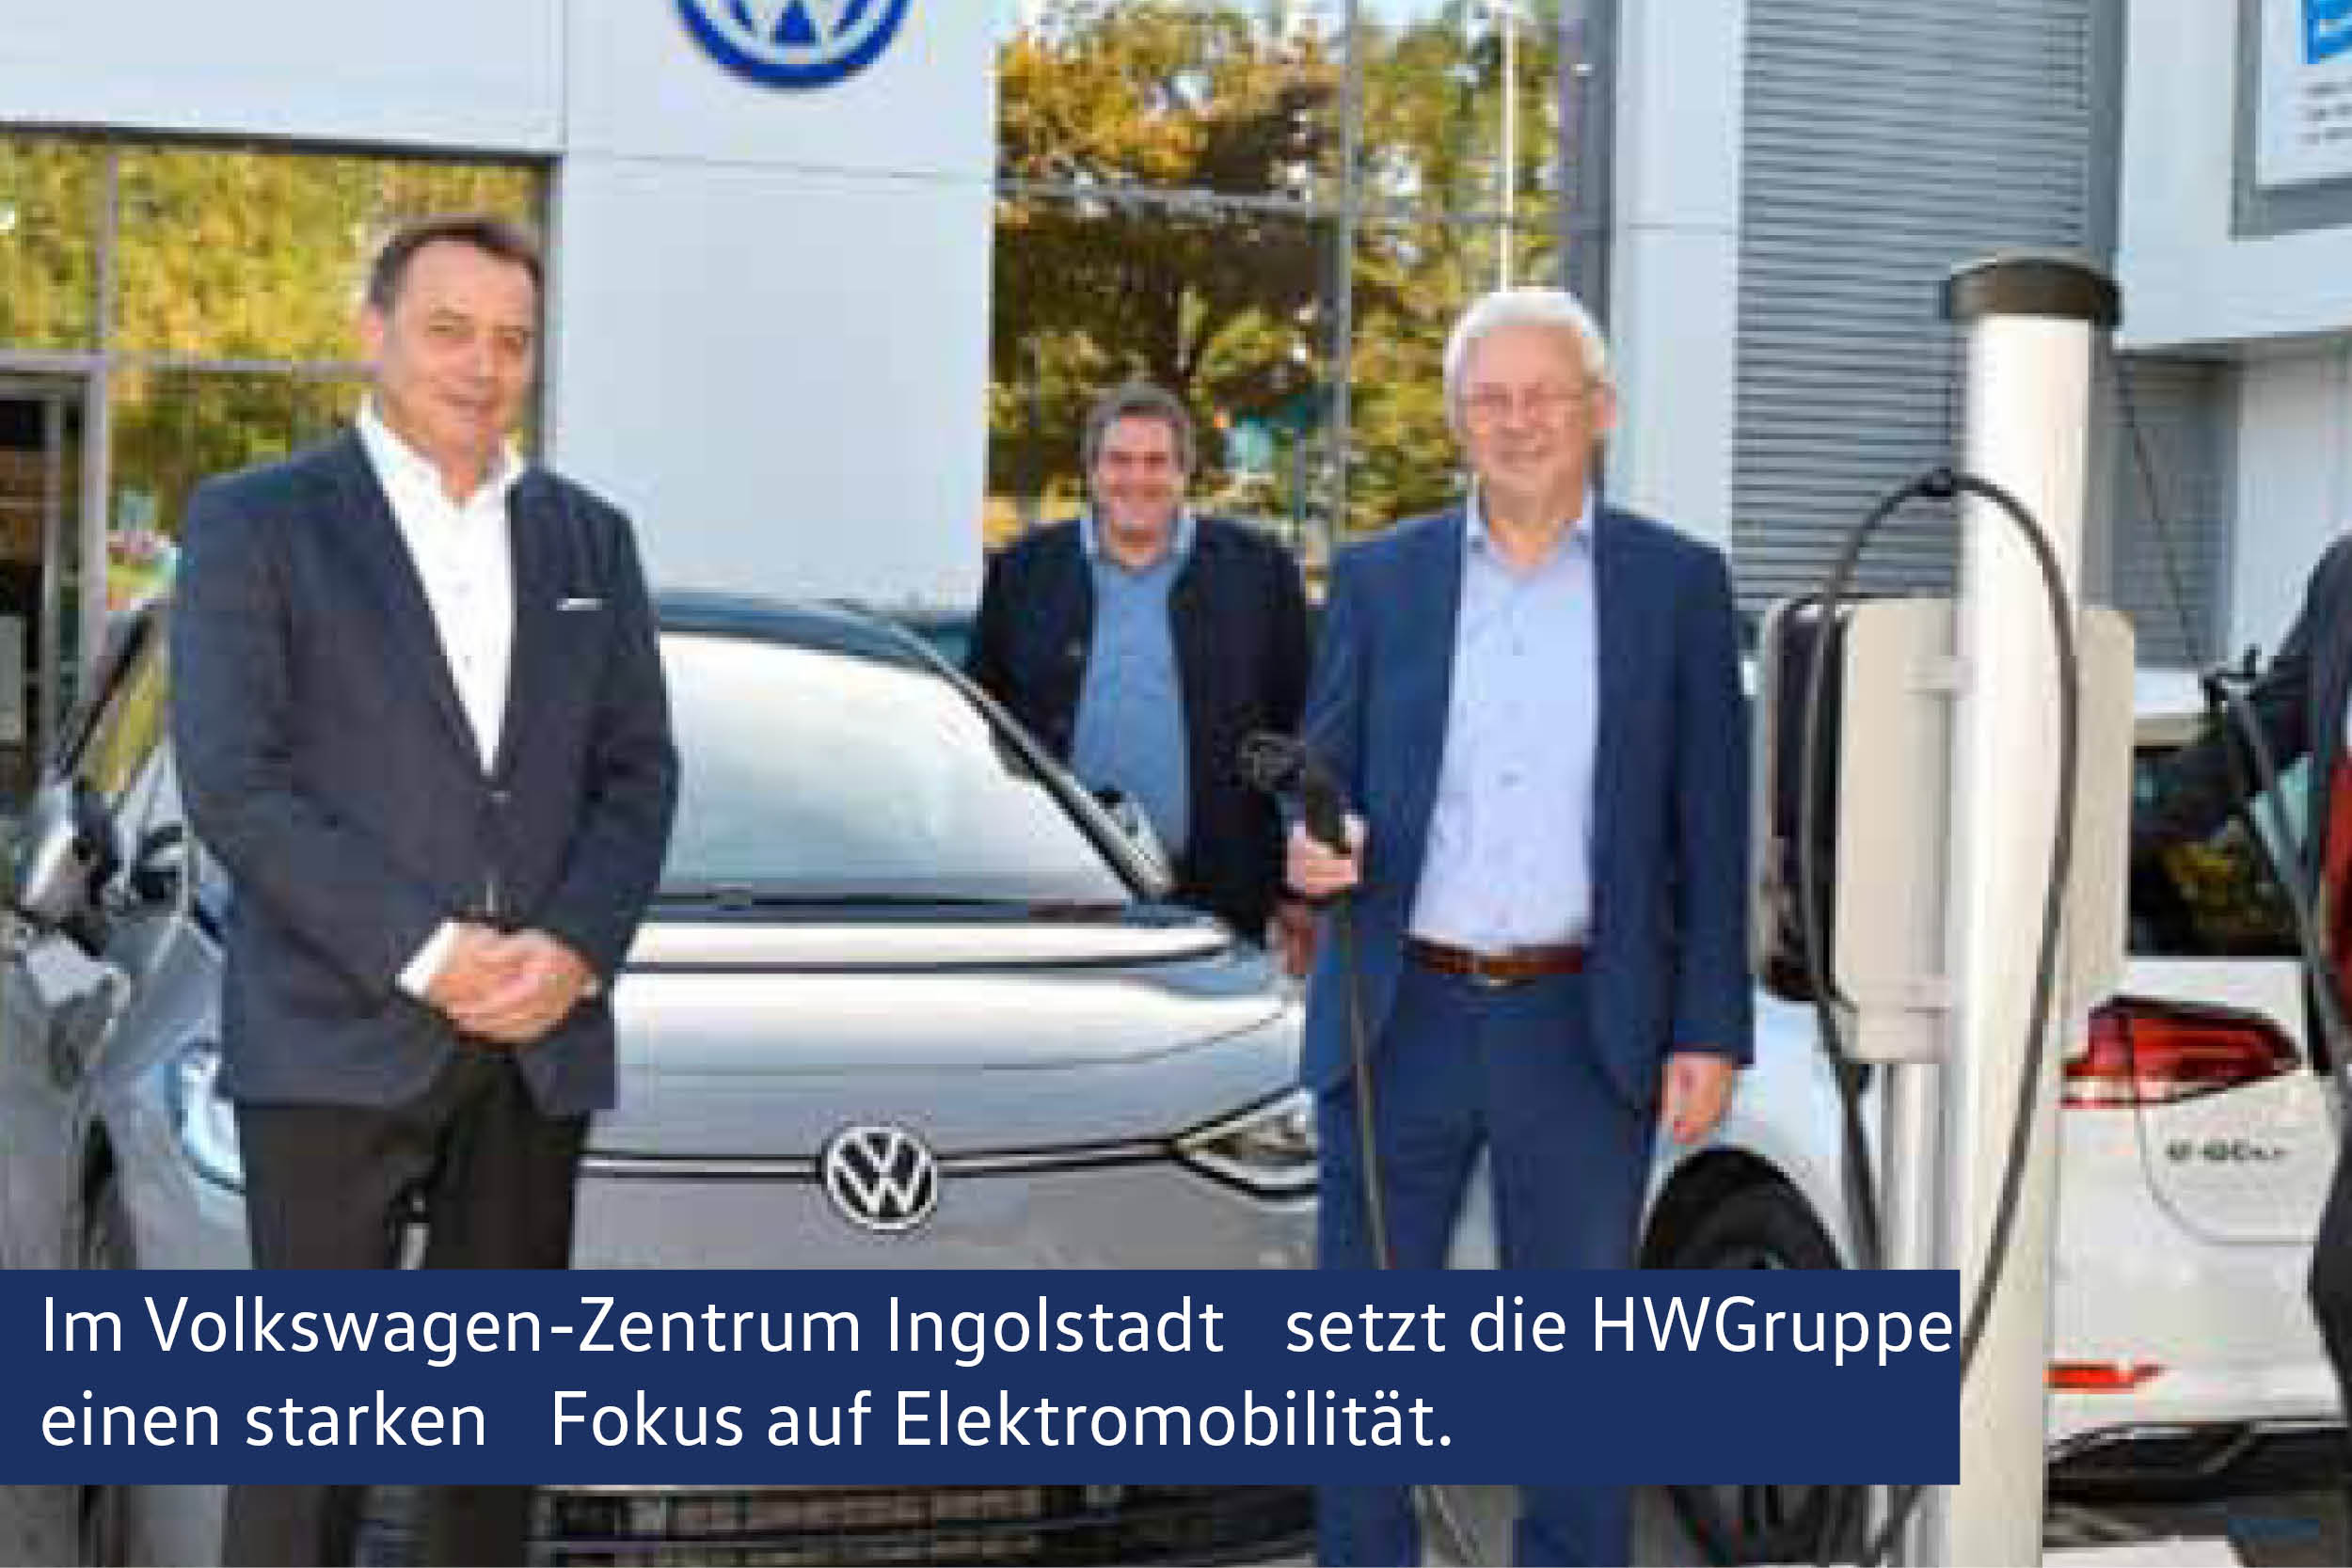 Die HWGruppe setzt einen starten Fokus auf Elektromobilität.